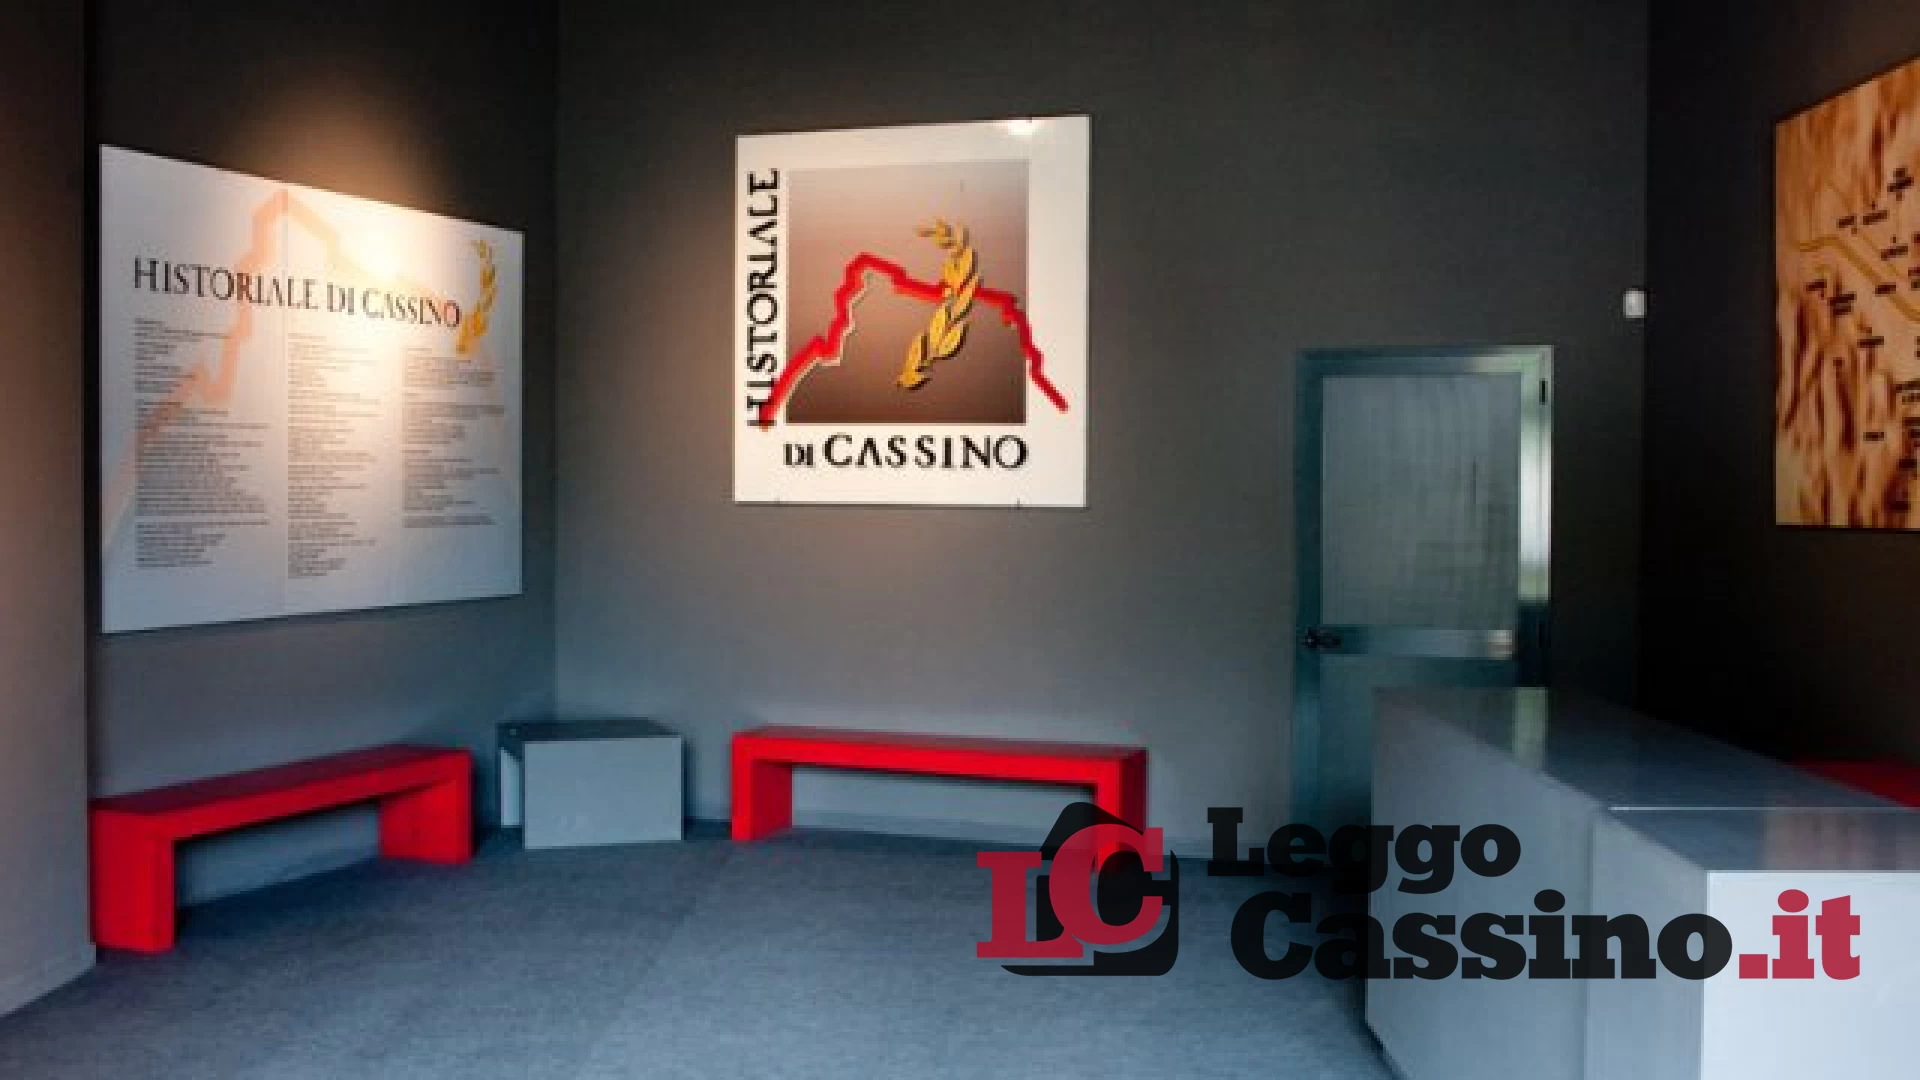 Domenica 24 aprile riapre al pubblico a Cassino il Museo Historiale